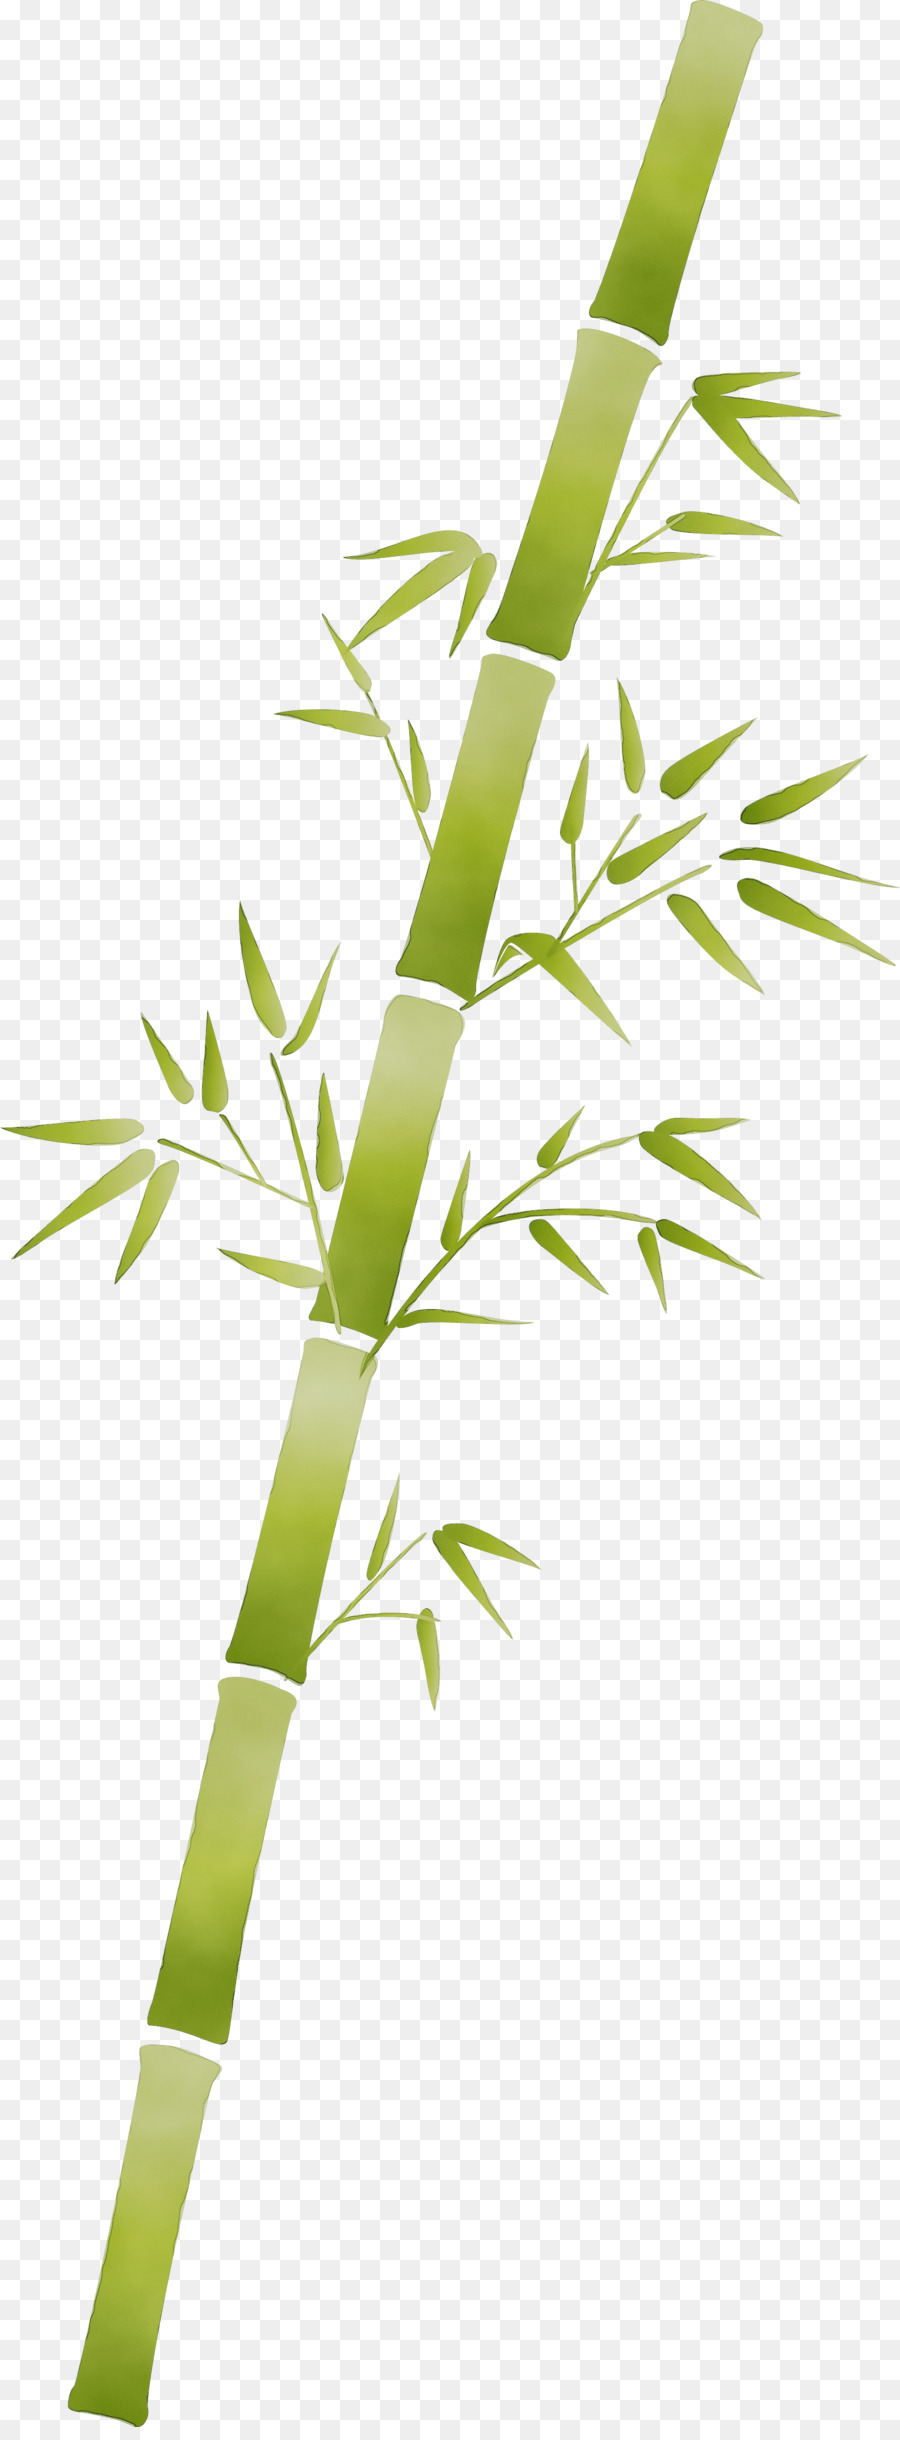 fiore di bambù del gambo della pianta della pianta della foglia - 